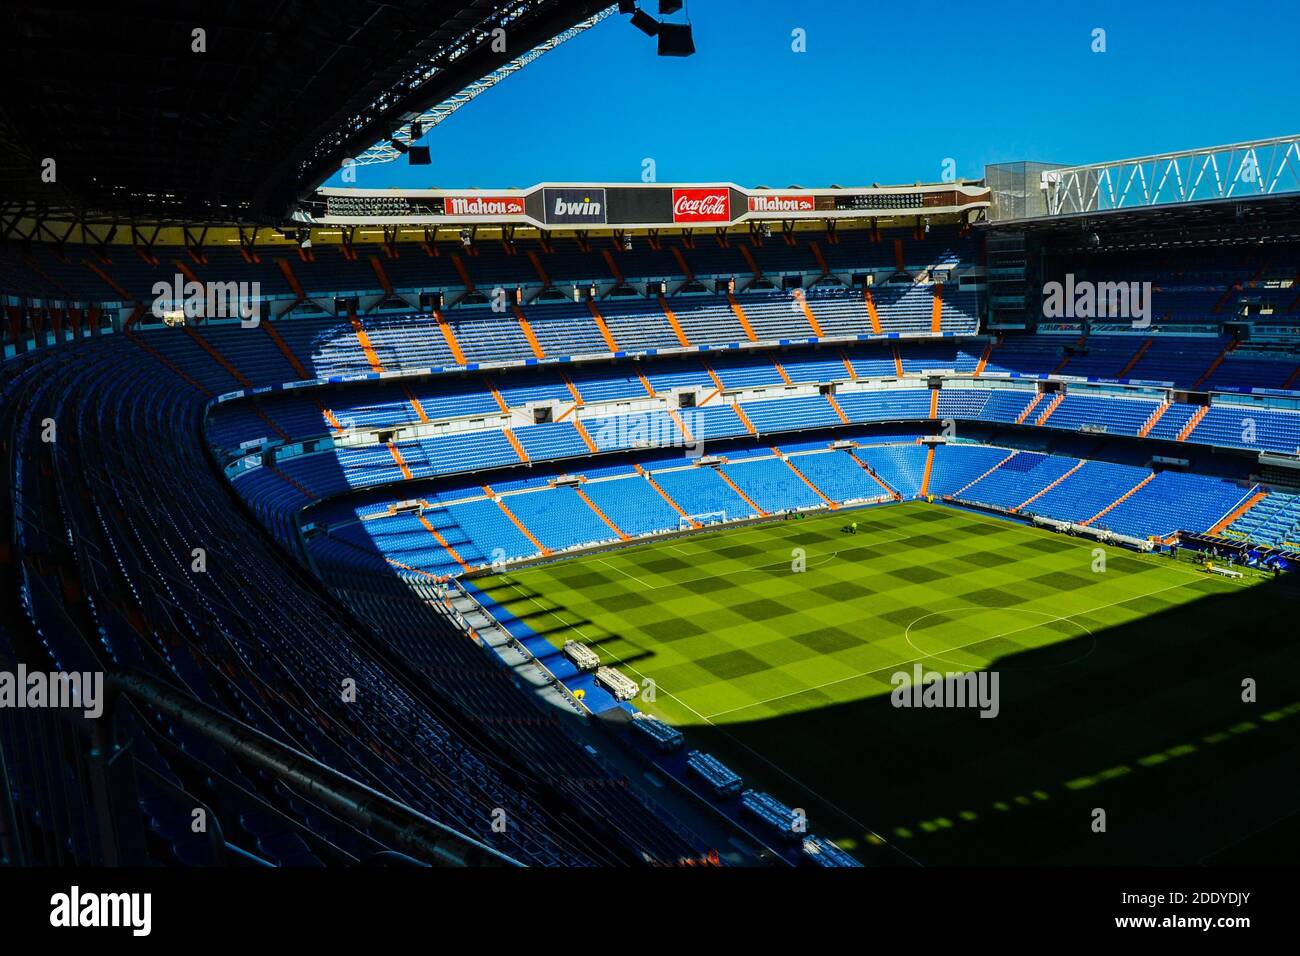 España, Madrid, 17.02.2012. Totalmente vacío del estadio Bernabeu del club de fútbol del Real Madrid durante el día soleado. Foto de stock